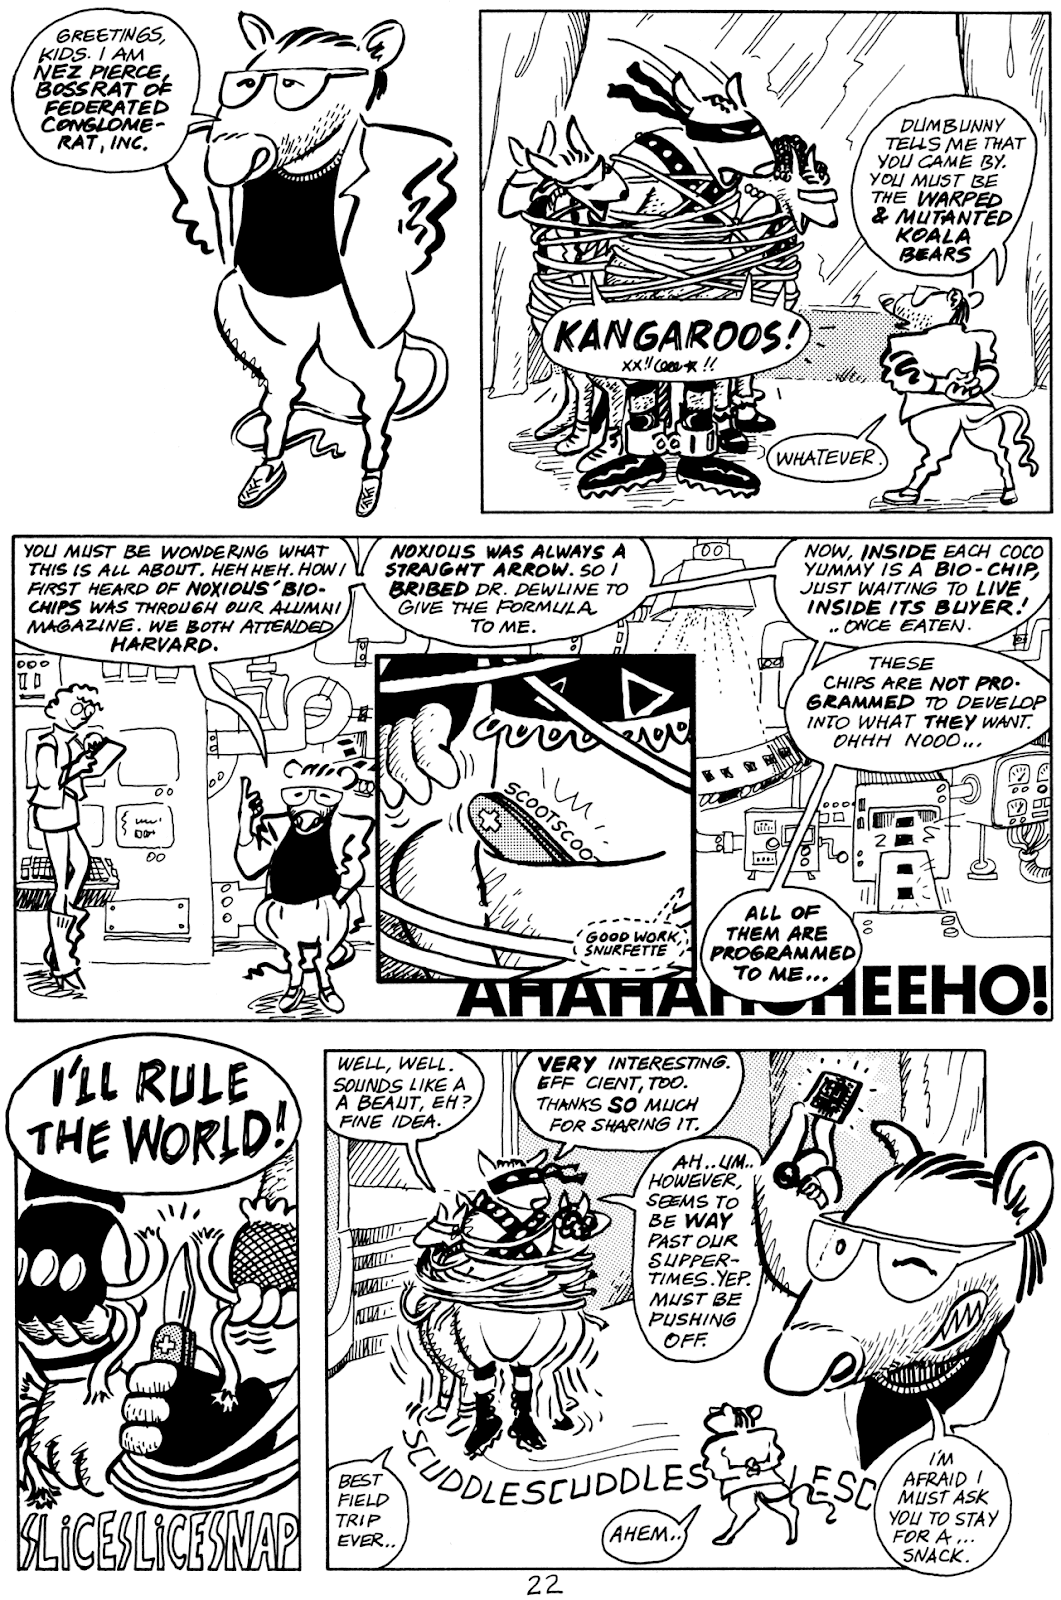 Pre-Teen Dirty-Gene Kung-Fu Kangaroos issue 1 - Page 24